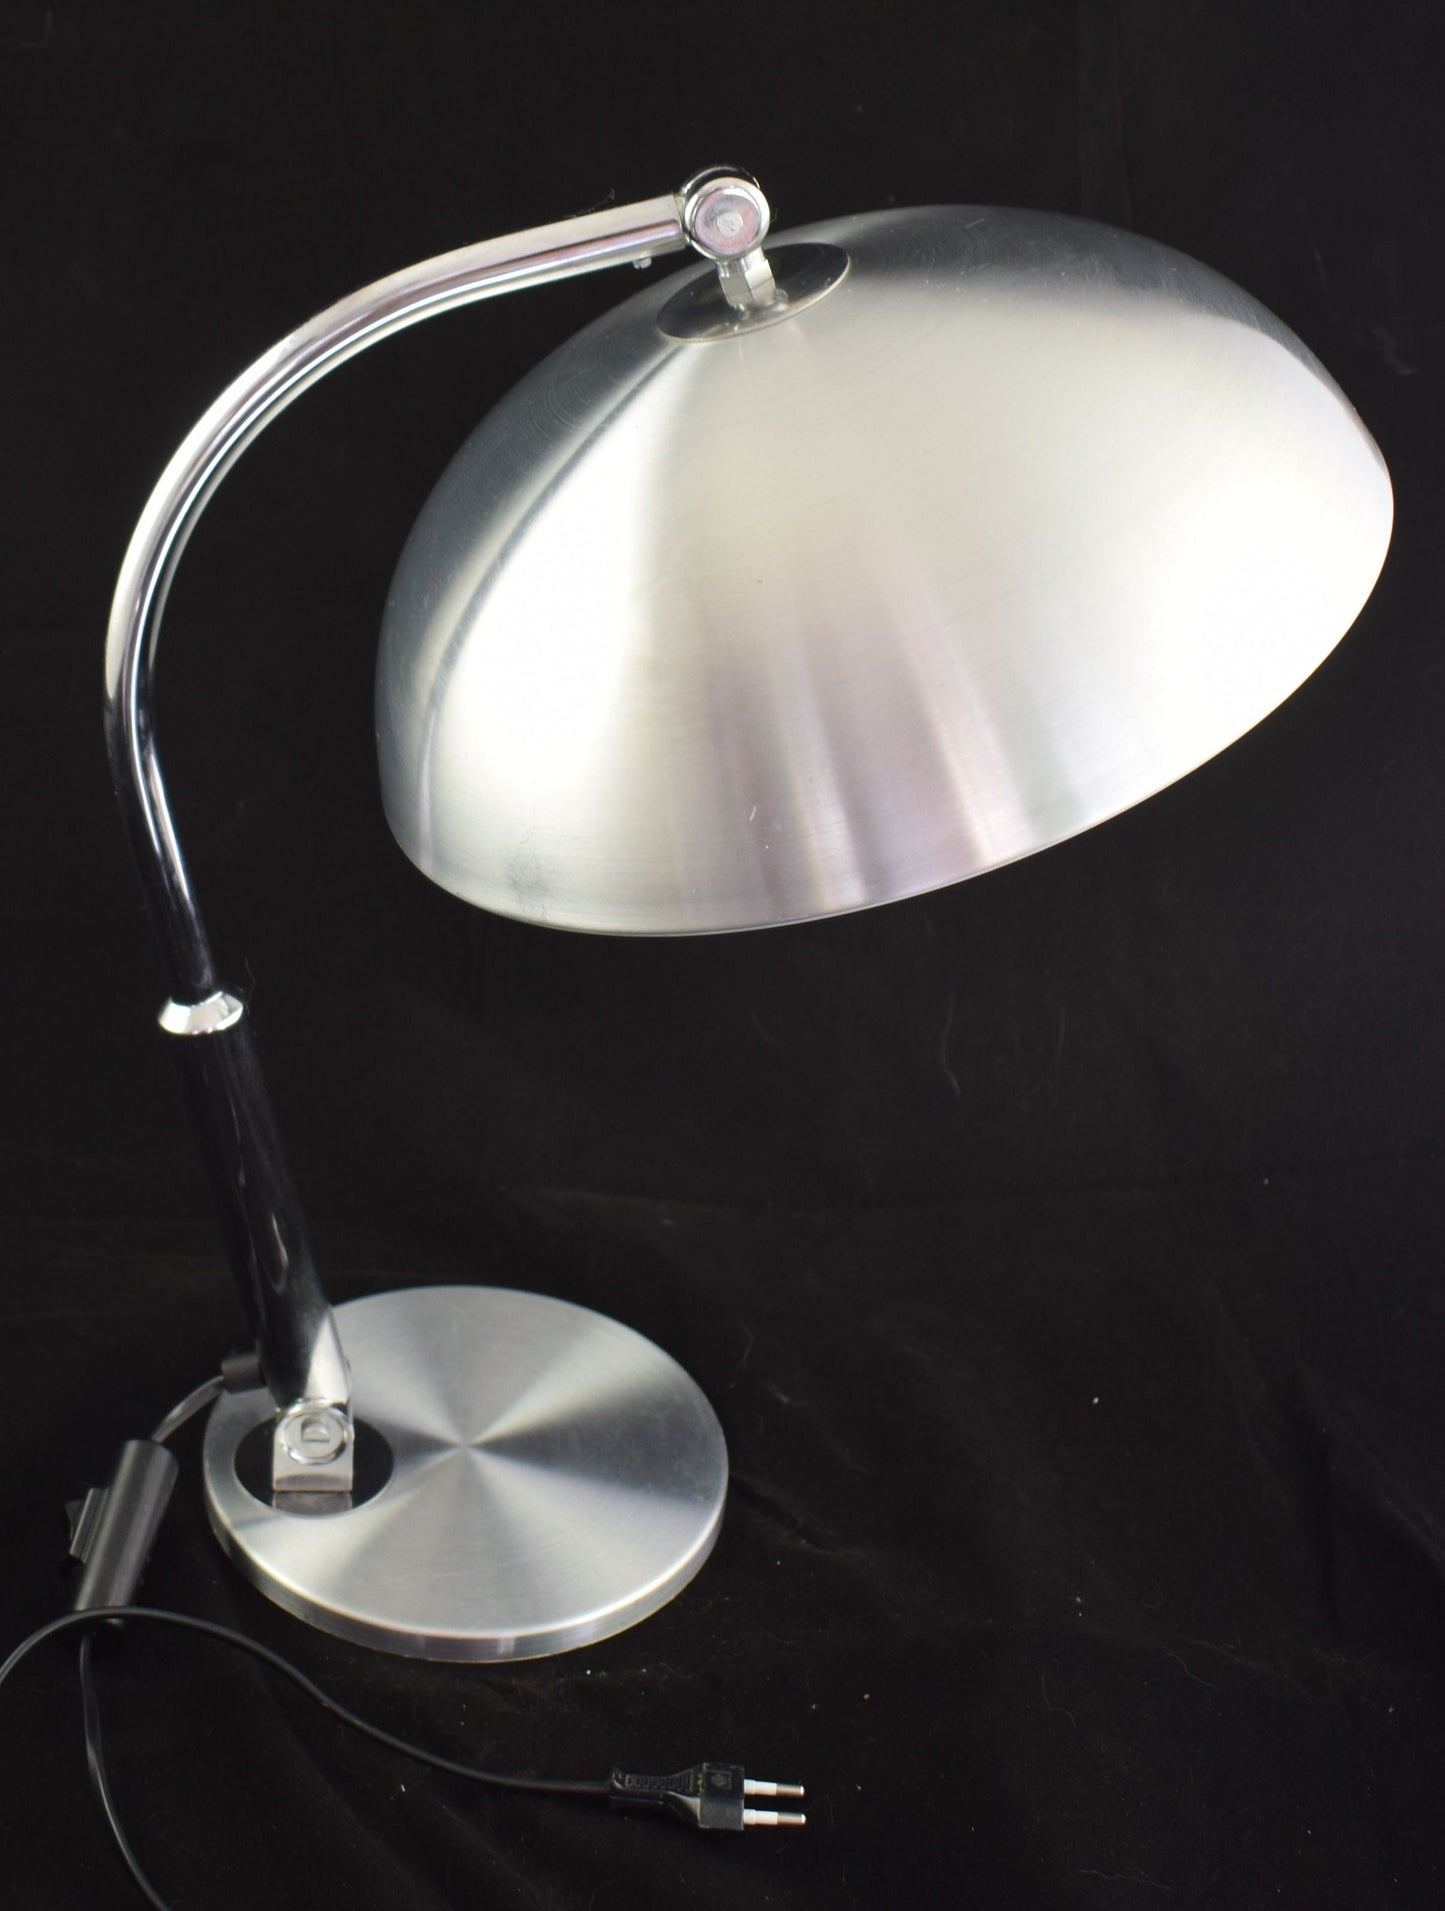 Lámpara de escritorio Hala Modelo 144 diseñada por Busquet, famosa lámpara de mesa de diseño de los Países Bajos